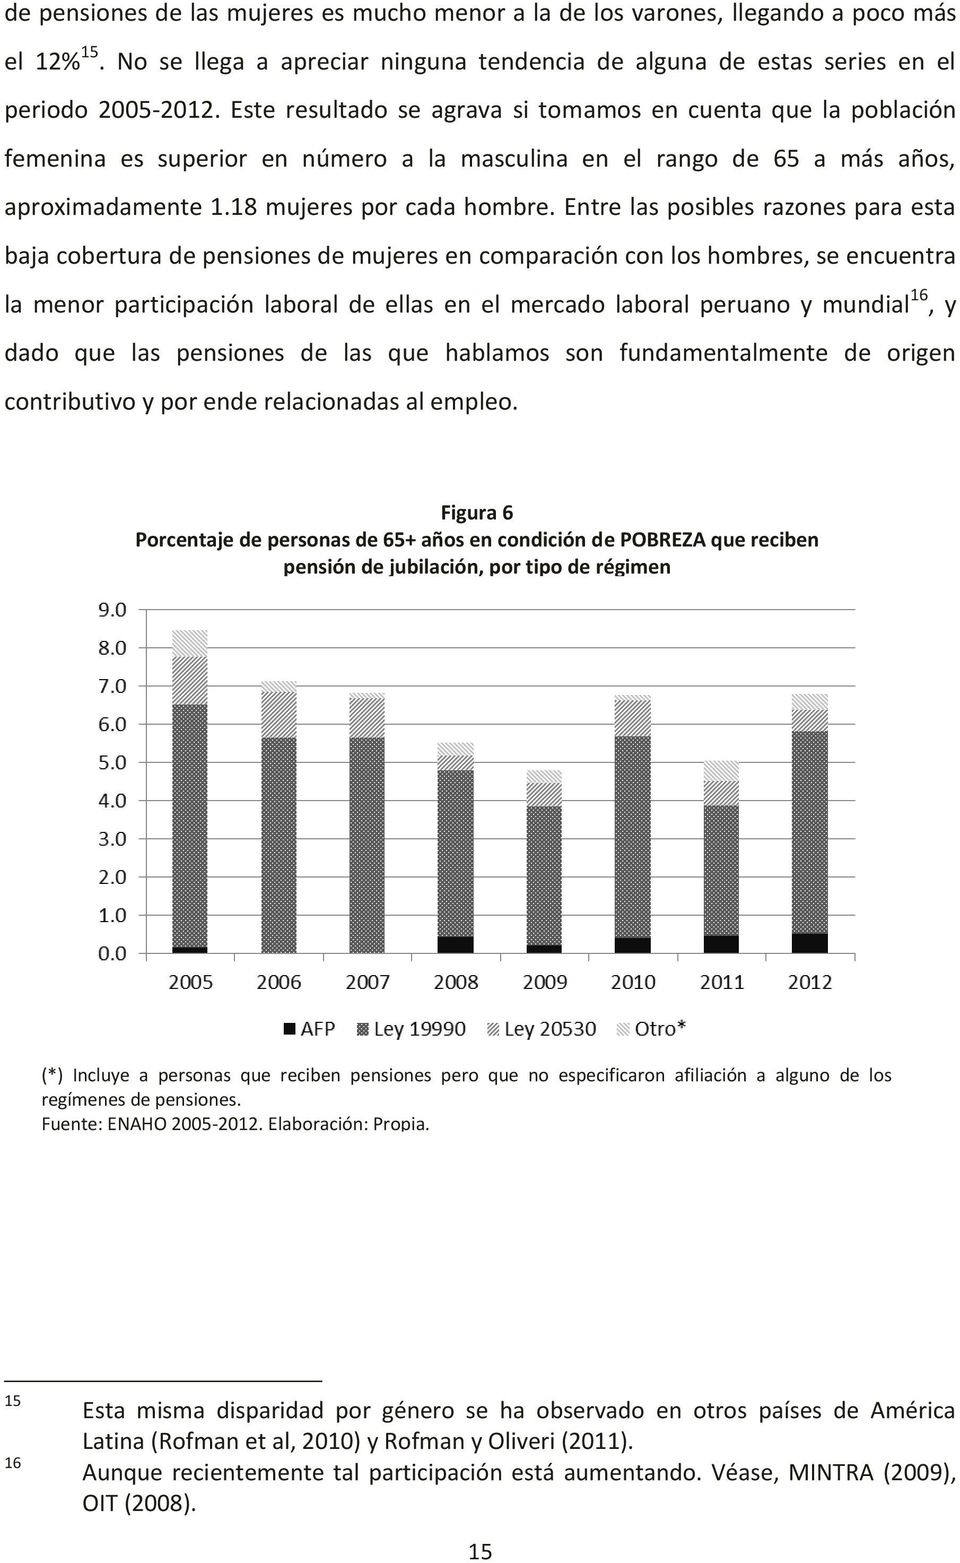 Entre las posibles razones para esta baja cobertura de pensiones de mujeres en comparación con los hombres, se encuentra la menor participación laboral de ellas en el mercado laboral peruano y